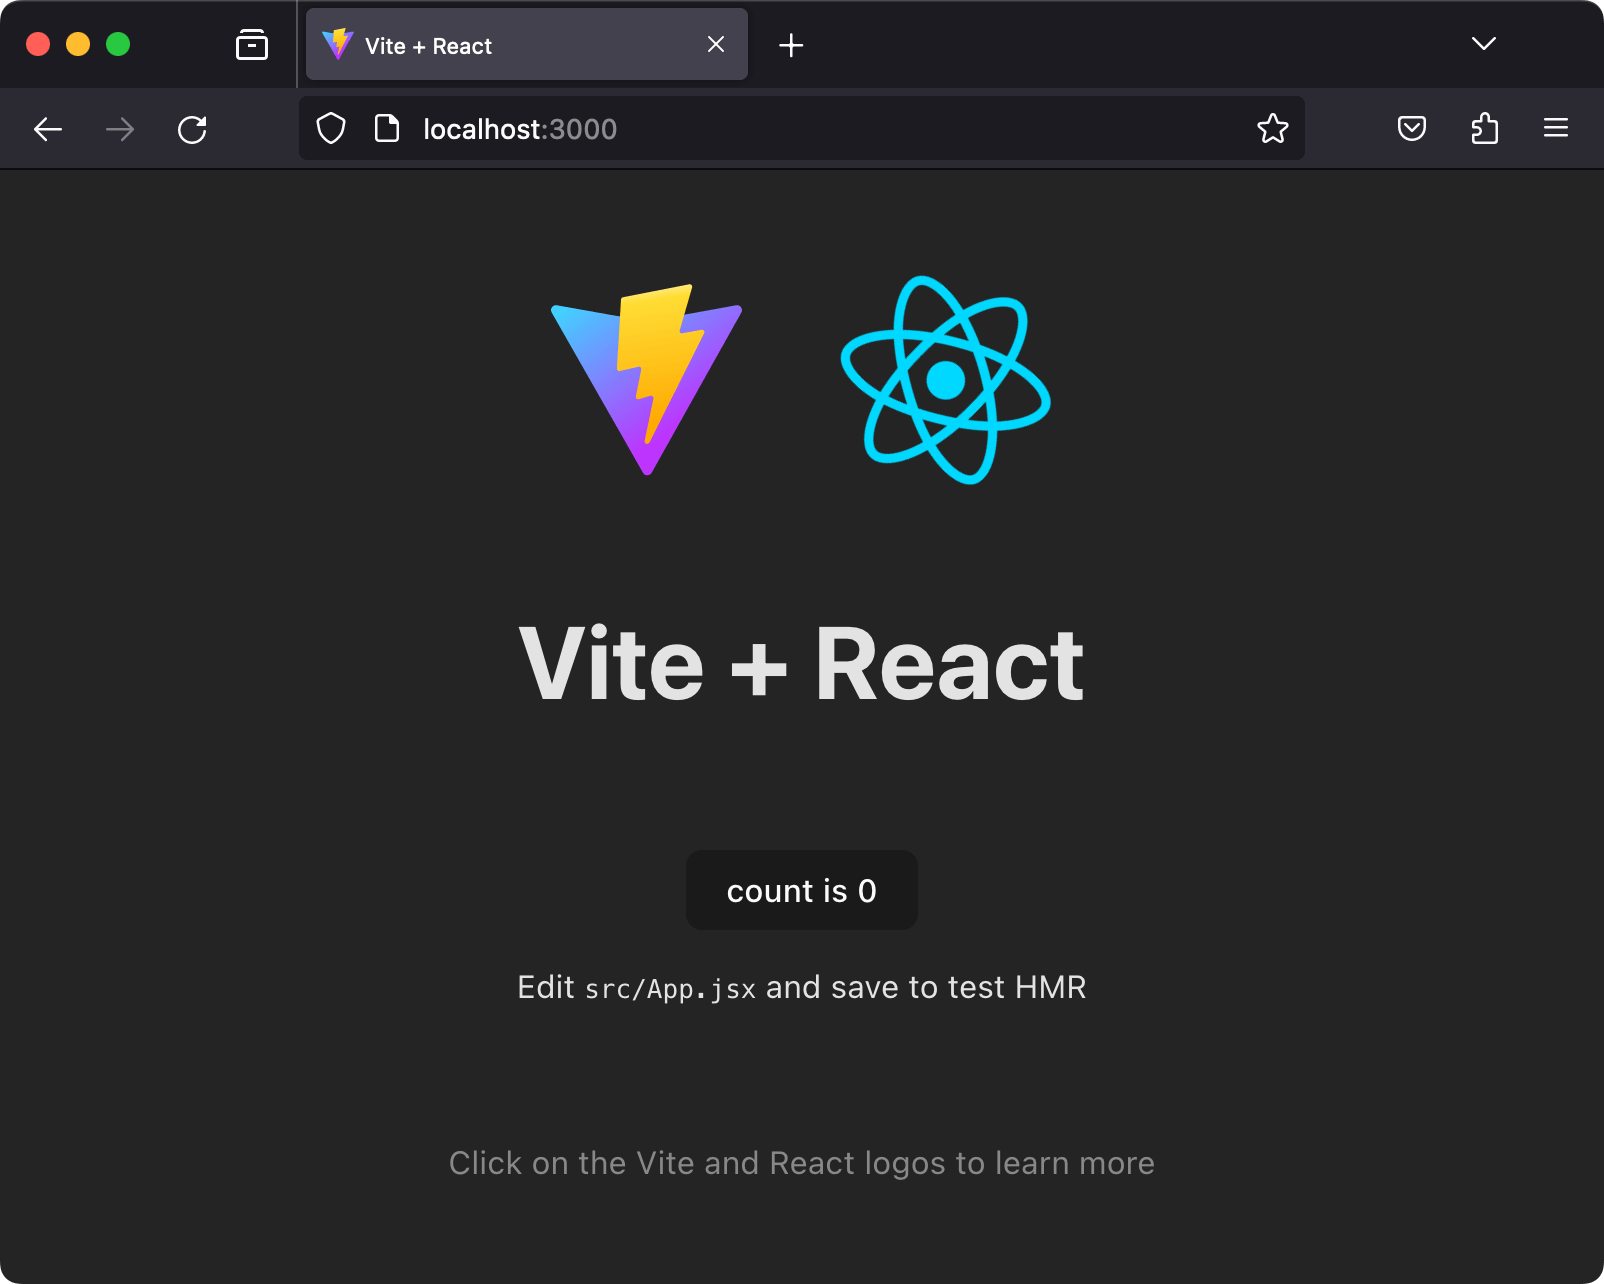 MacOS 版 Firefox で localhost:3000 を開いたスクリーンショット。Vite の React テンプレートから作成したアプリケーションを表示させています。